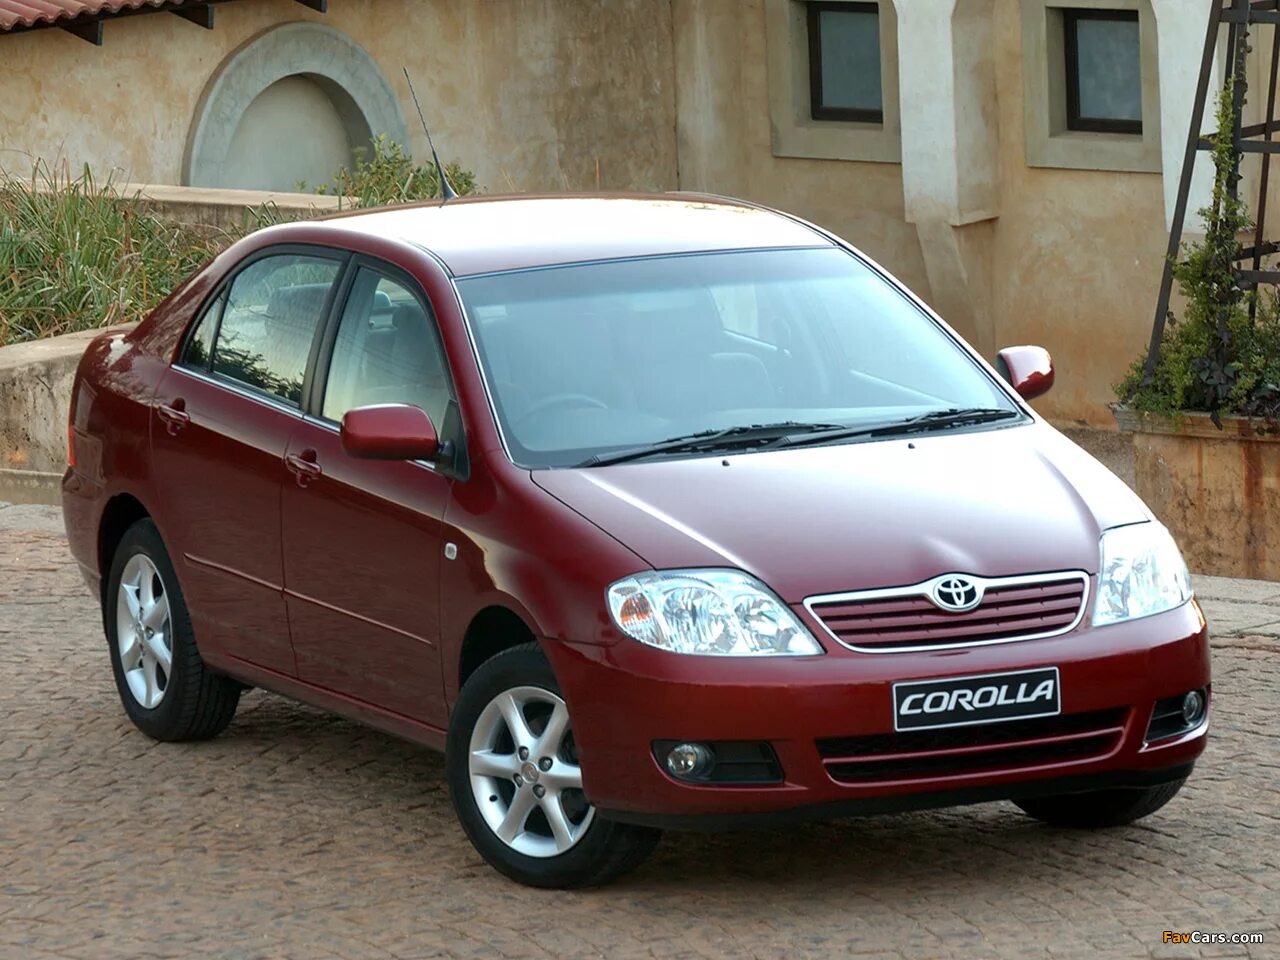 Королла 2005 г. Toyota Corolla 2005. Тойота Королла 2005. Toyota Corolla 2004. Toyota Corolla 2004 седан.